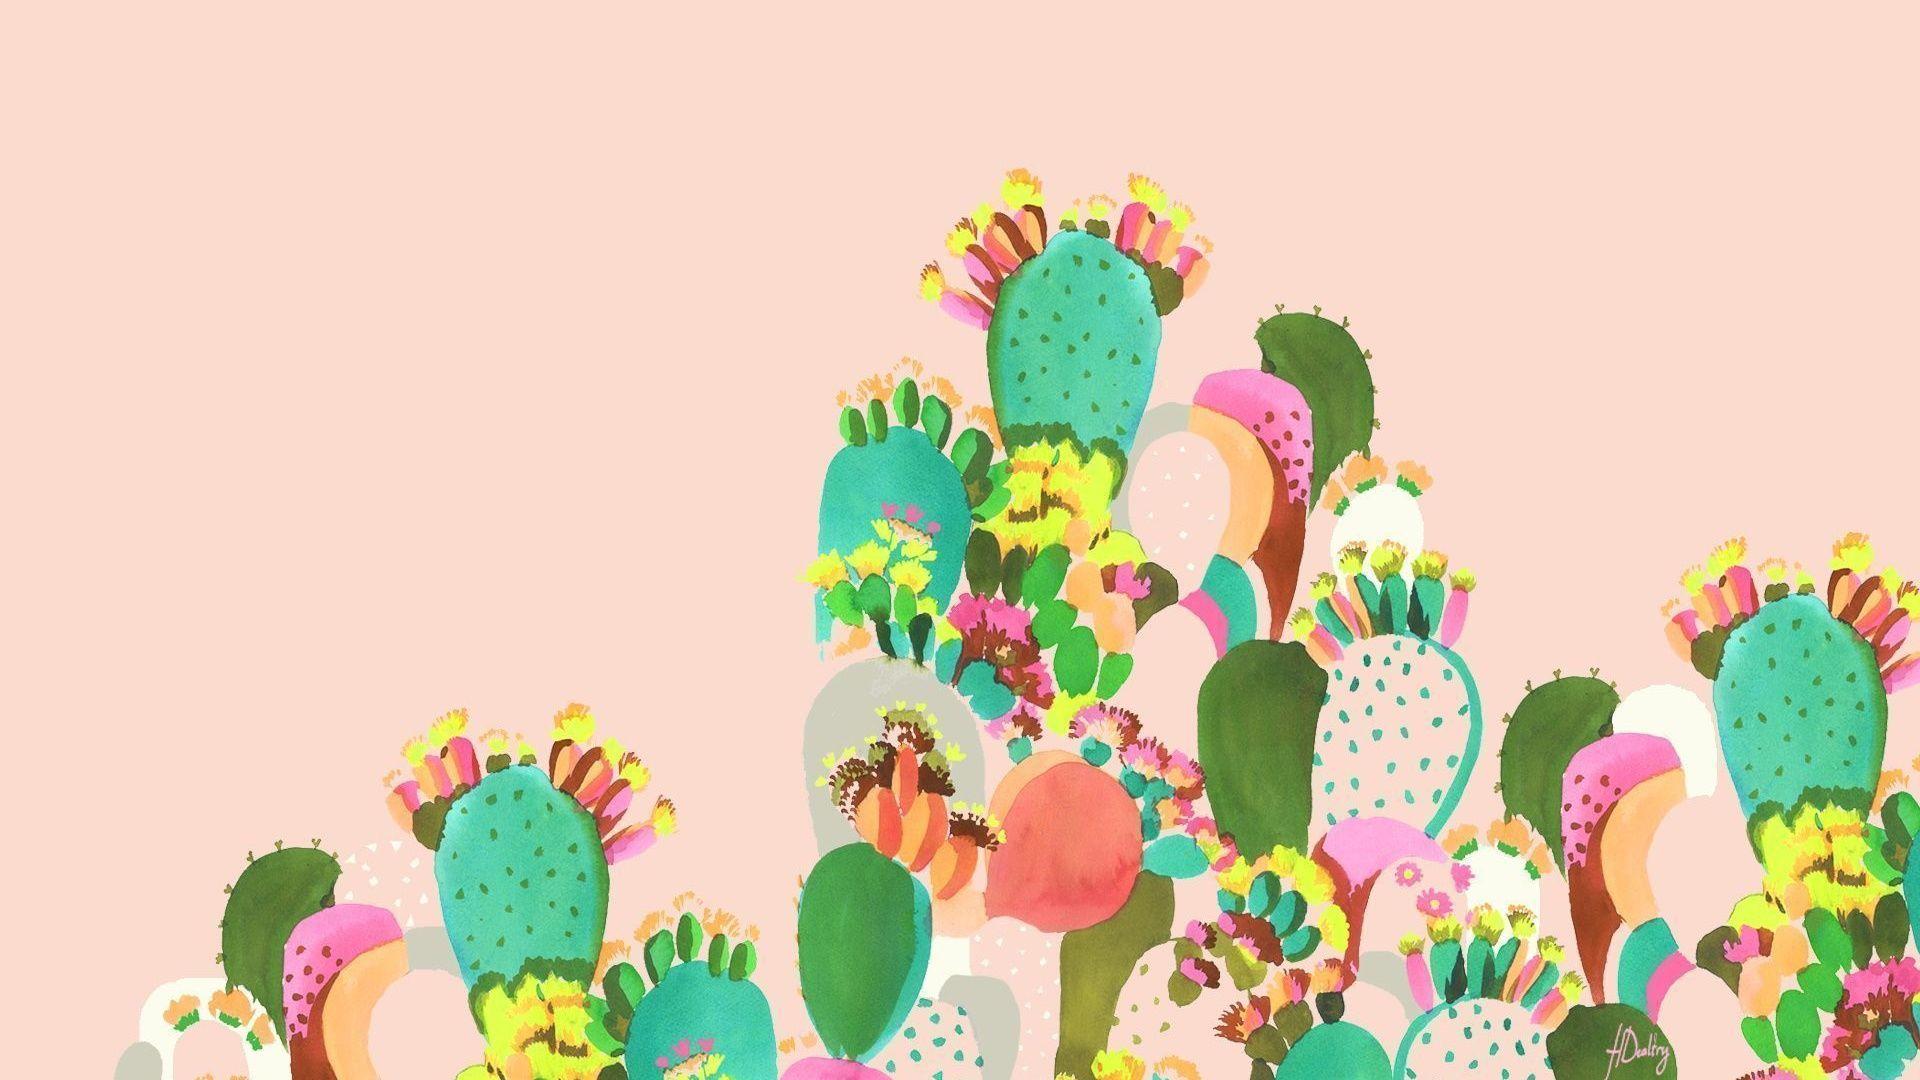 Cartoon Cactus Wallpapers - Top Free Cartoon Cactus Backgrounds